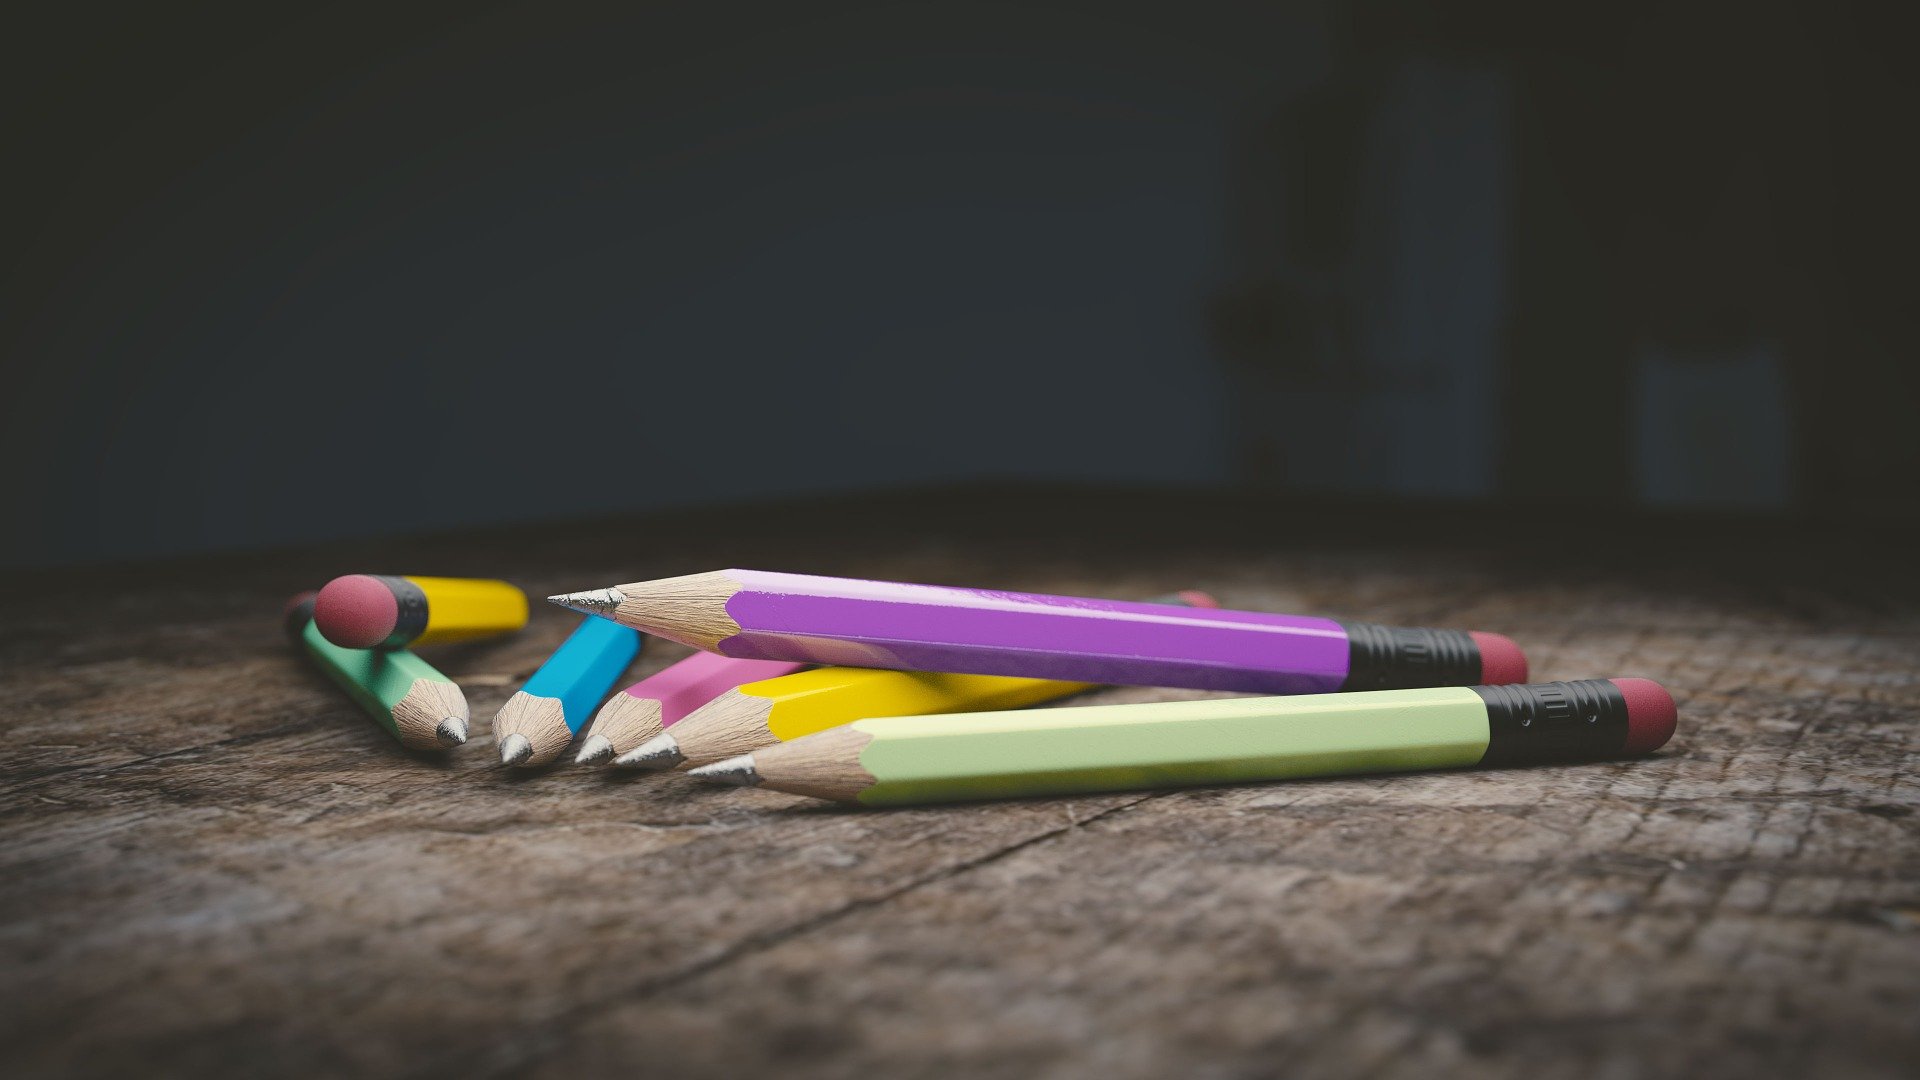 Des crayons à papier de couleurs vives sur une table en bois